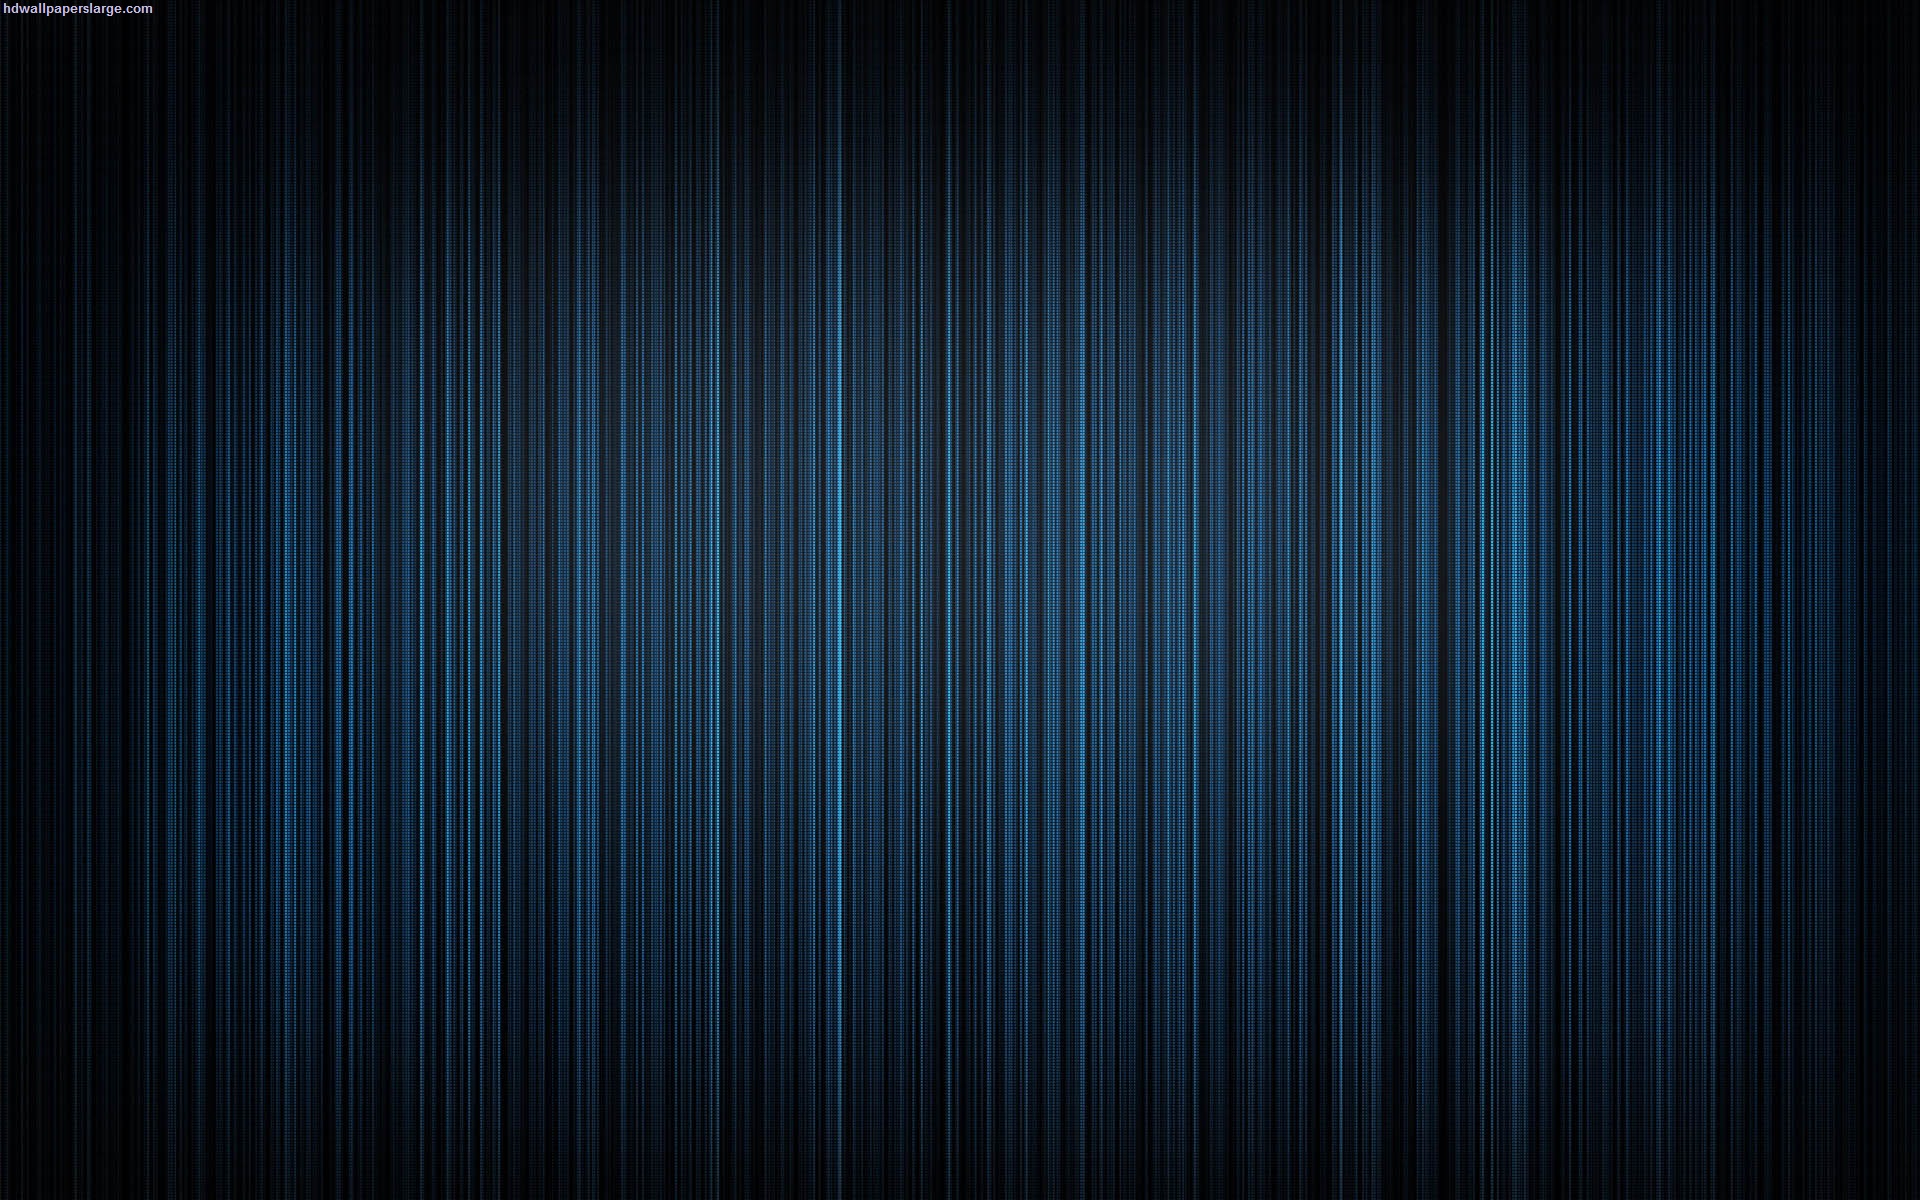 Dark Blue HD Wallpapers - WallpaperSafari